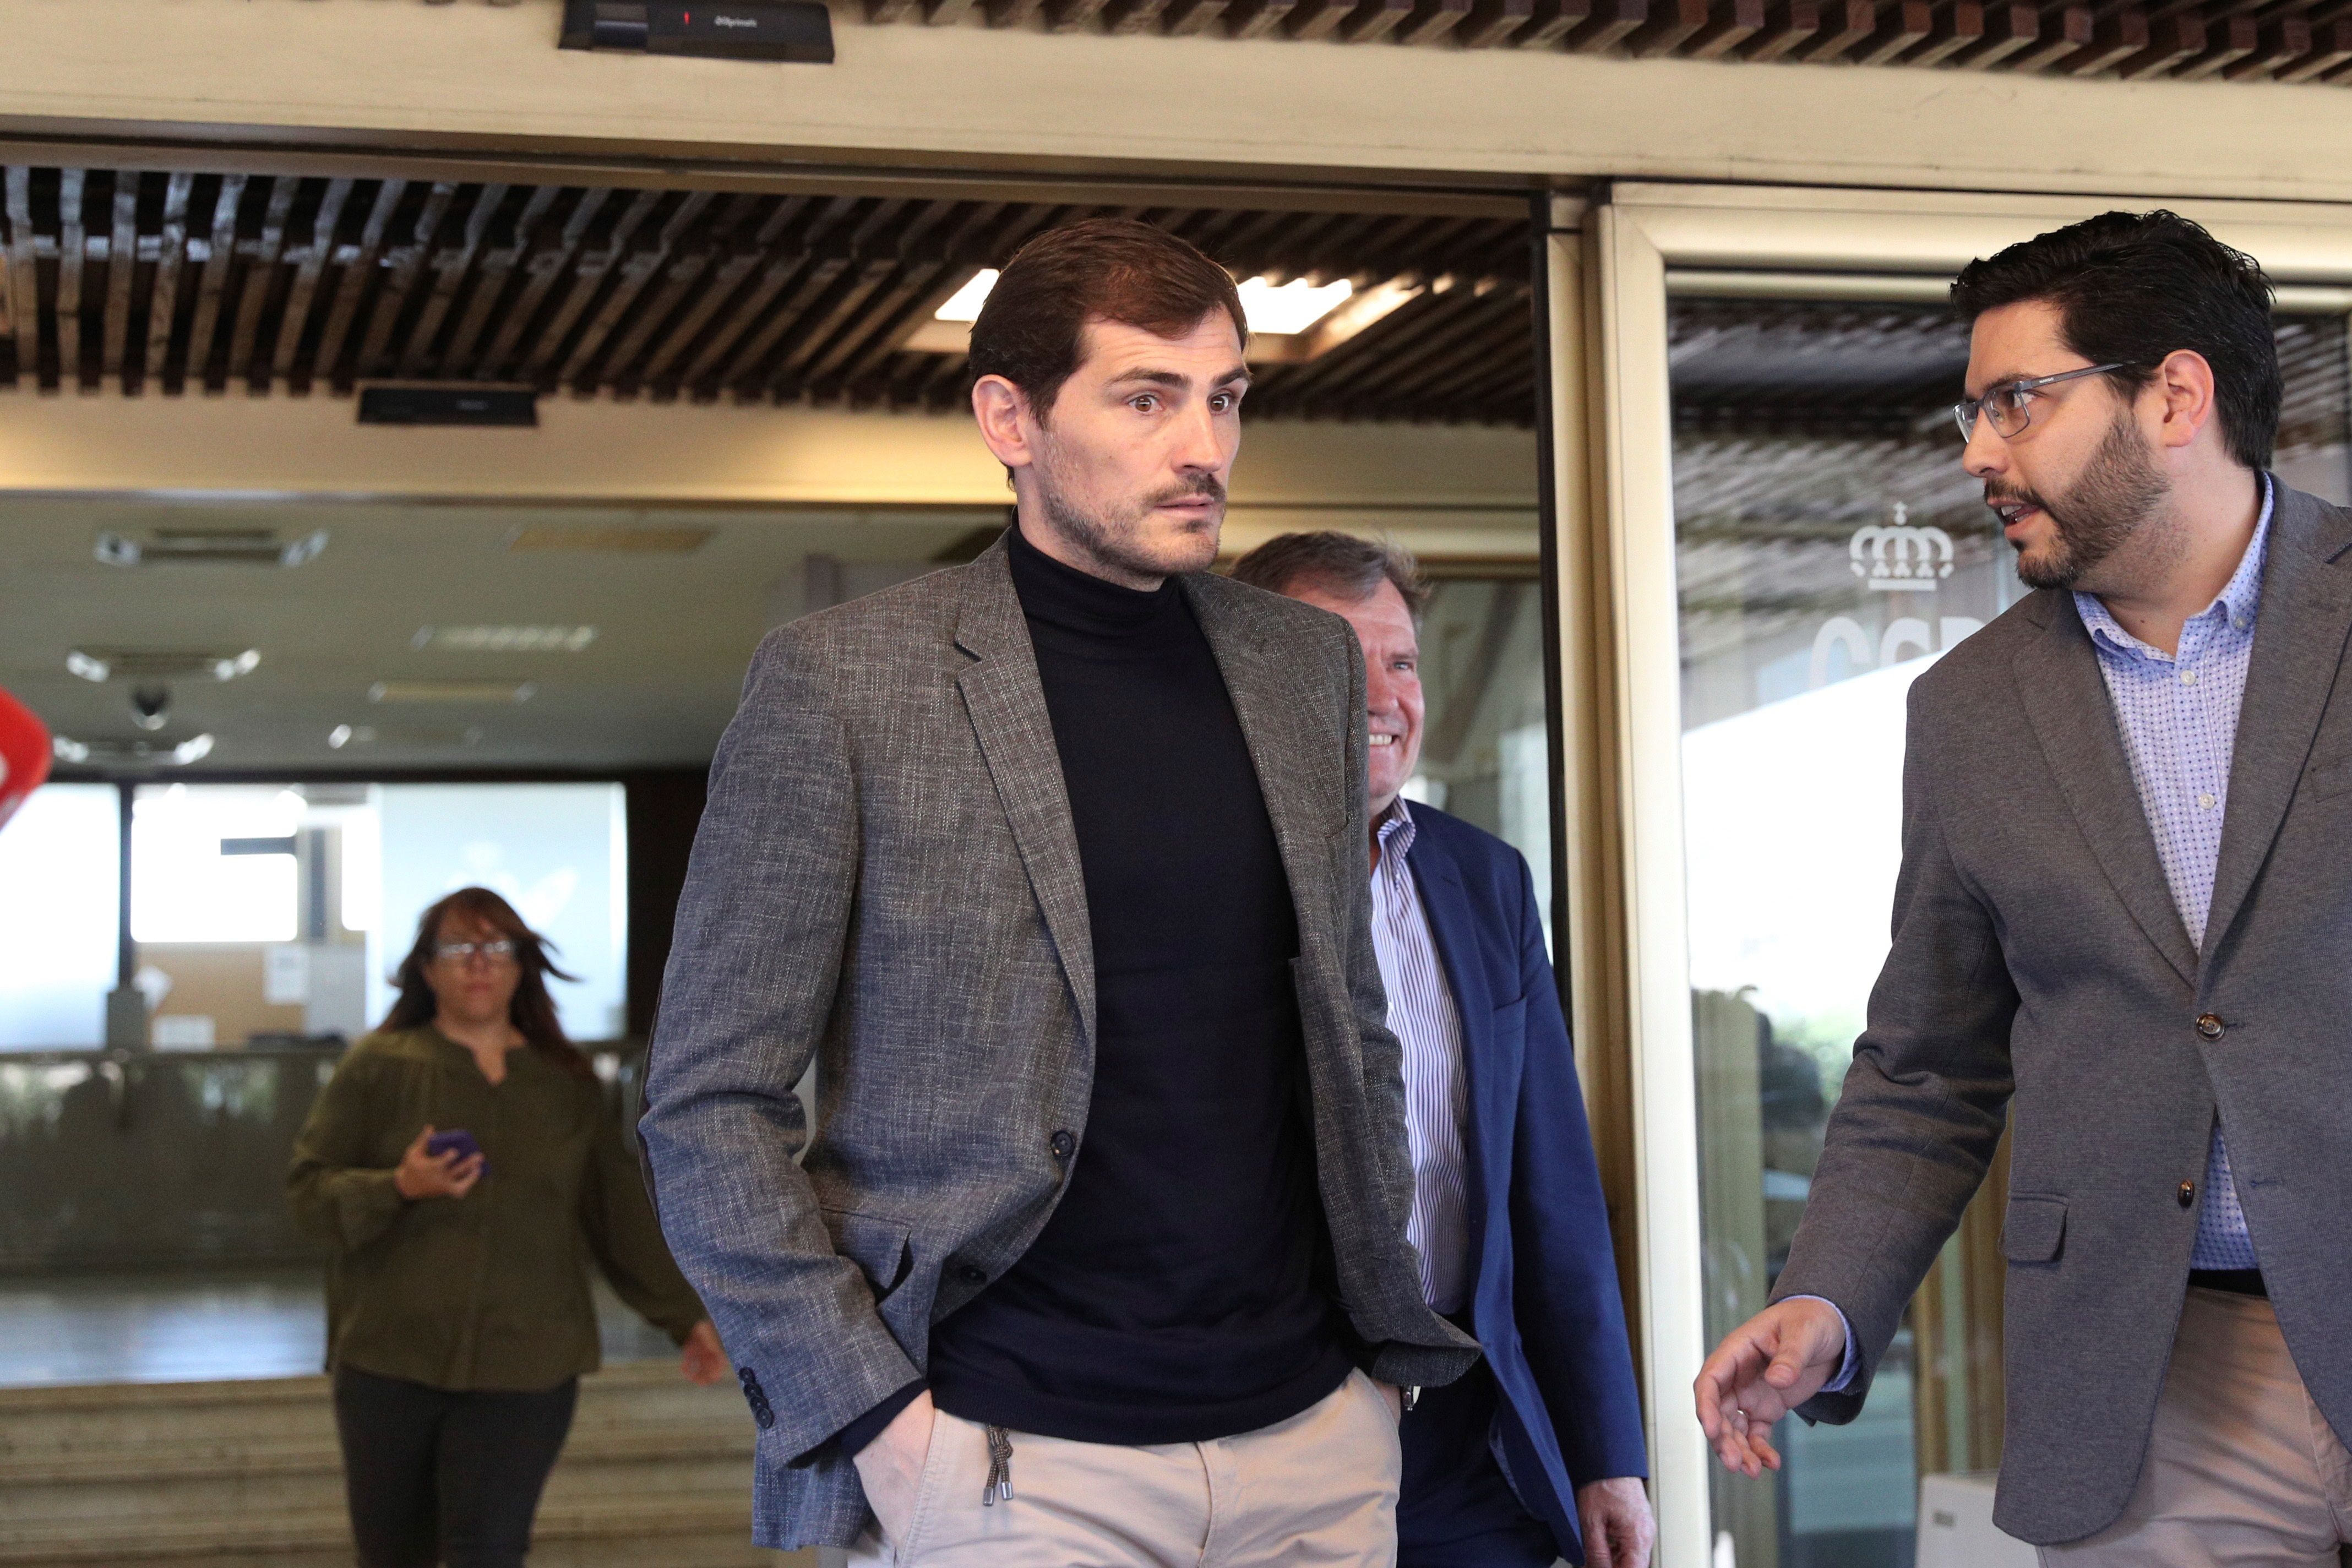  El exfutbolista español Iker Casillas se une a la lucha contra el covid-19. (Foto Prensa Libre: EFE )